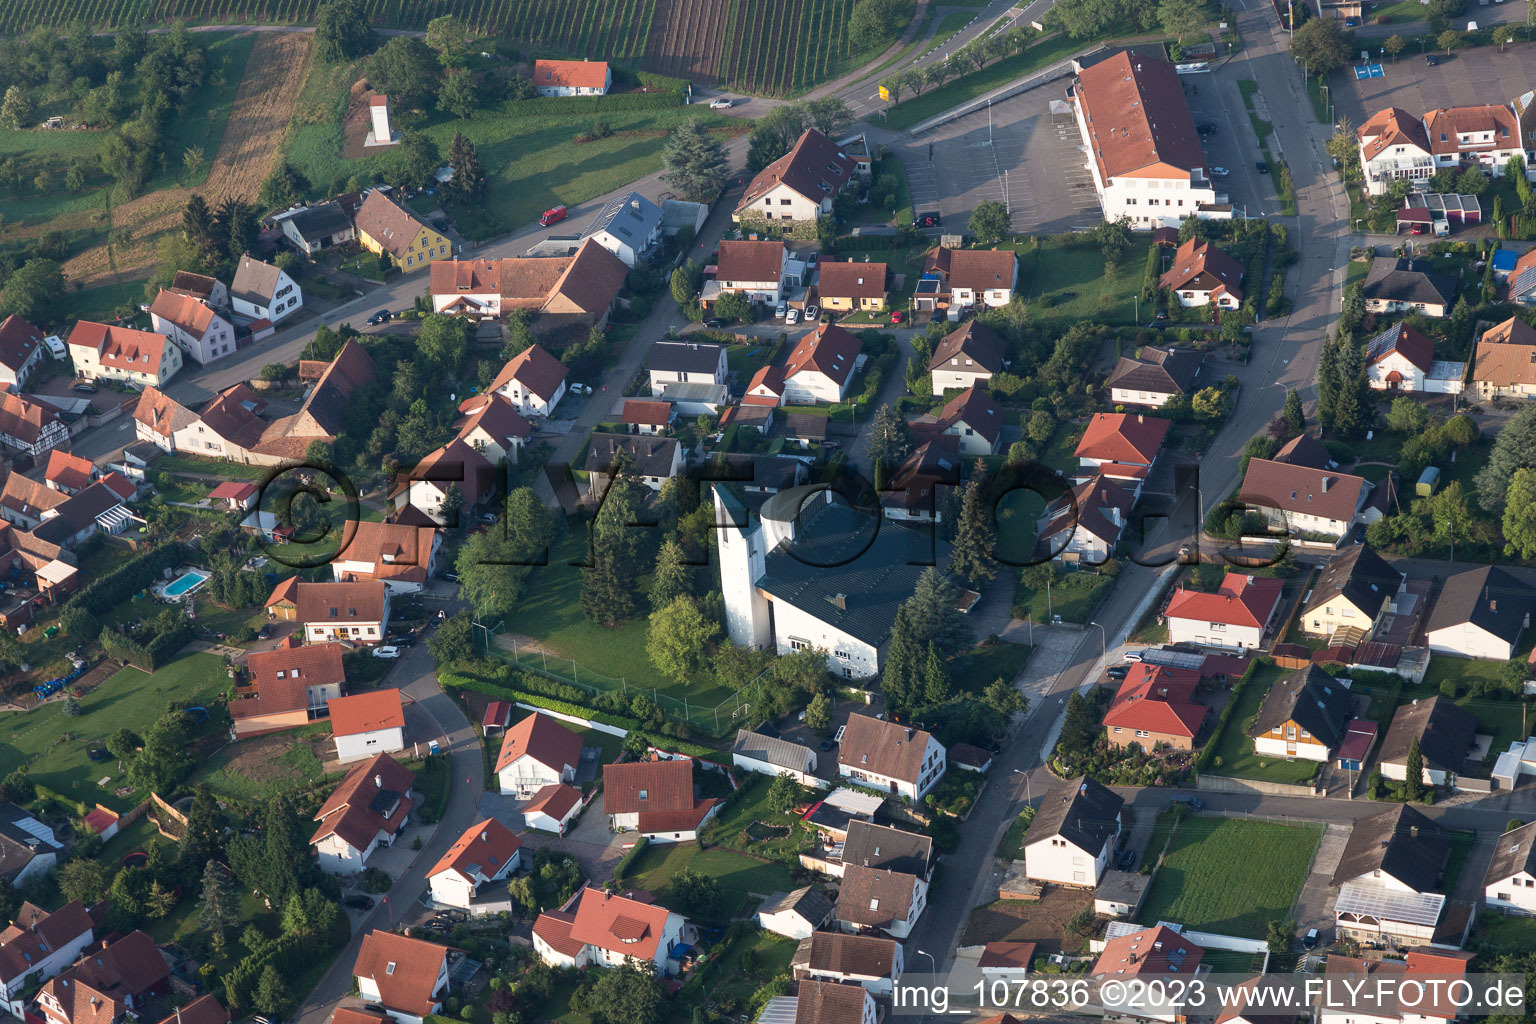 District Rechtenbach in Schweigen-Rechtenbach in the state Rhineland-Palatinate, Germany from a drone